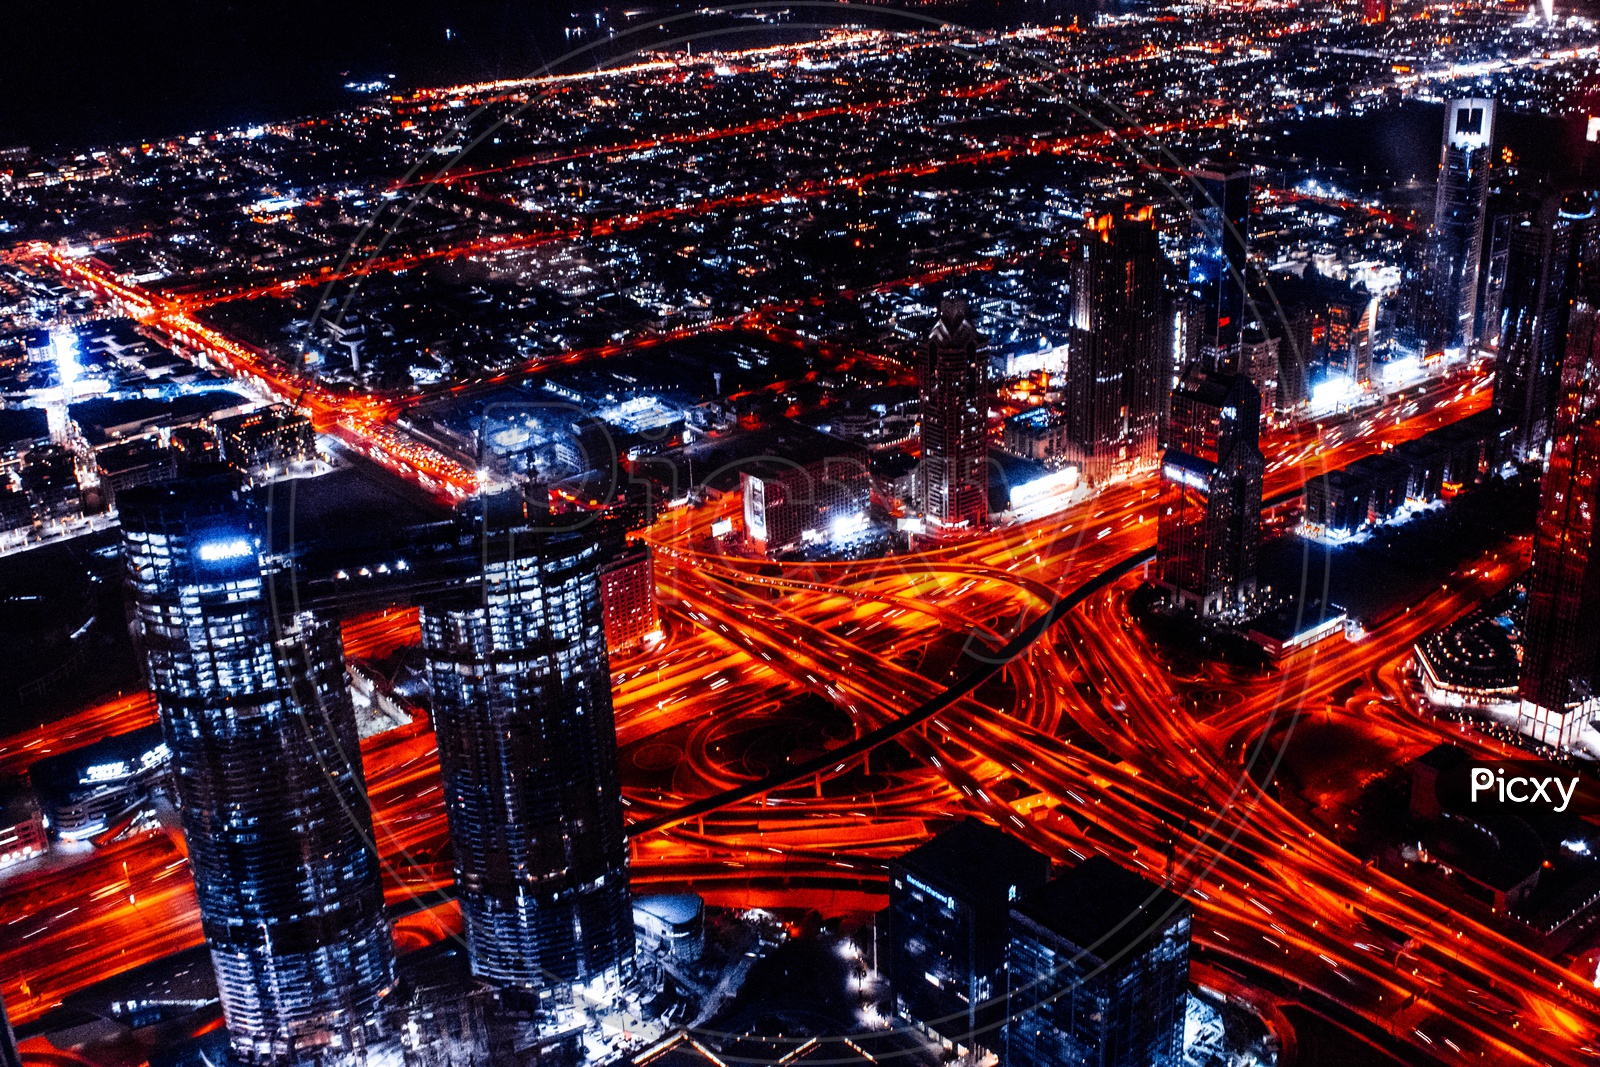 Night View of Dubai